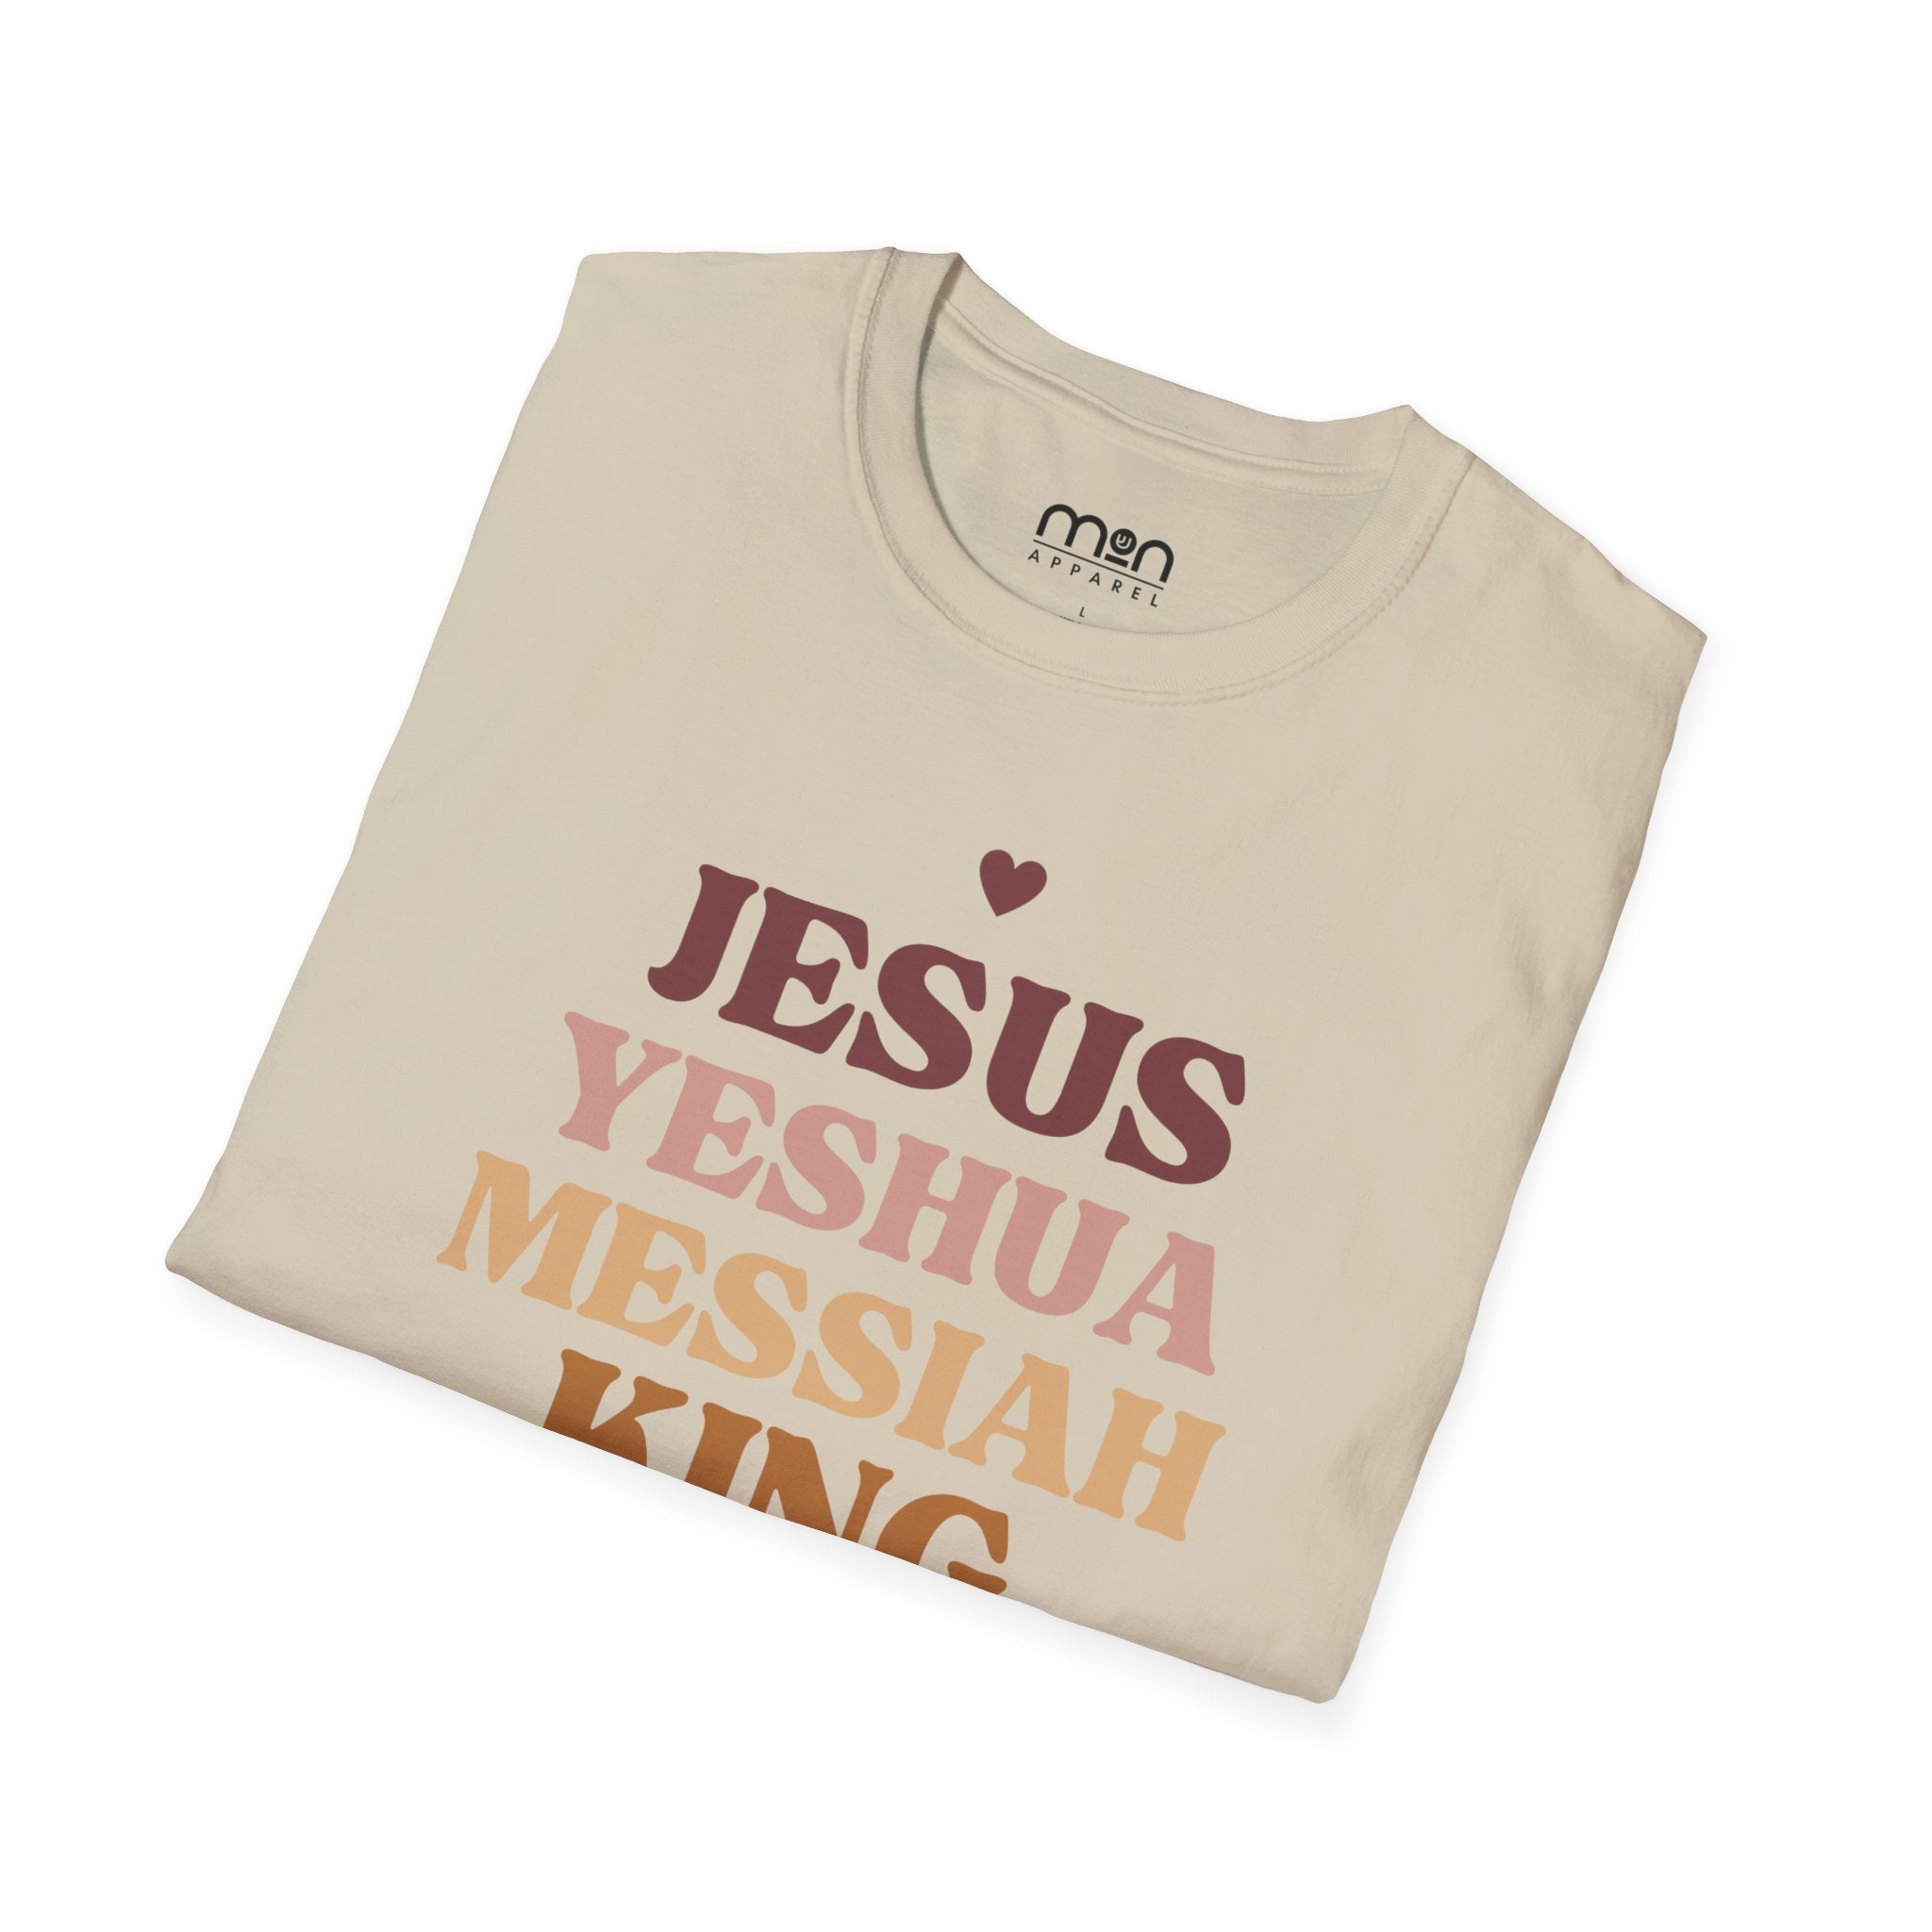 Jesus Yeshua Messaiah Women's Softstyle T-Shirt